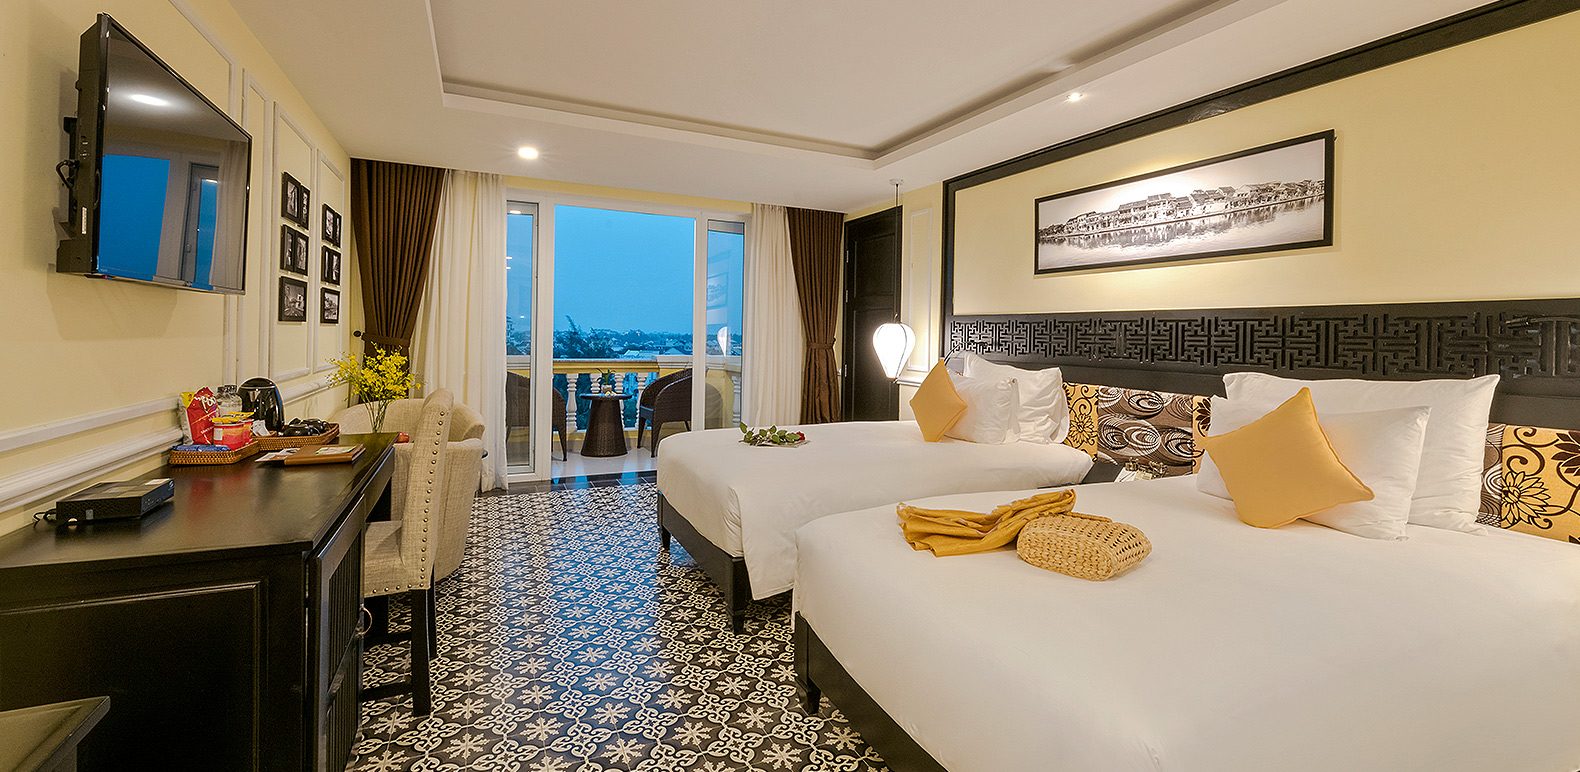 Le Pavillon Hoi An Luxury Resort & Spa Hoi An - Khách sạn 4 sao sở hữu tầm nhìn ra vườn dừa Bảy Mẫu 15